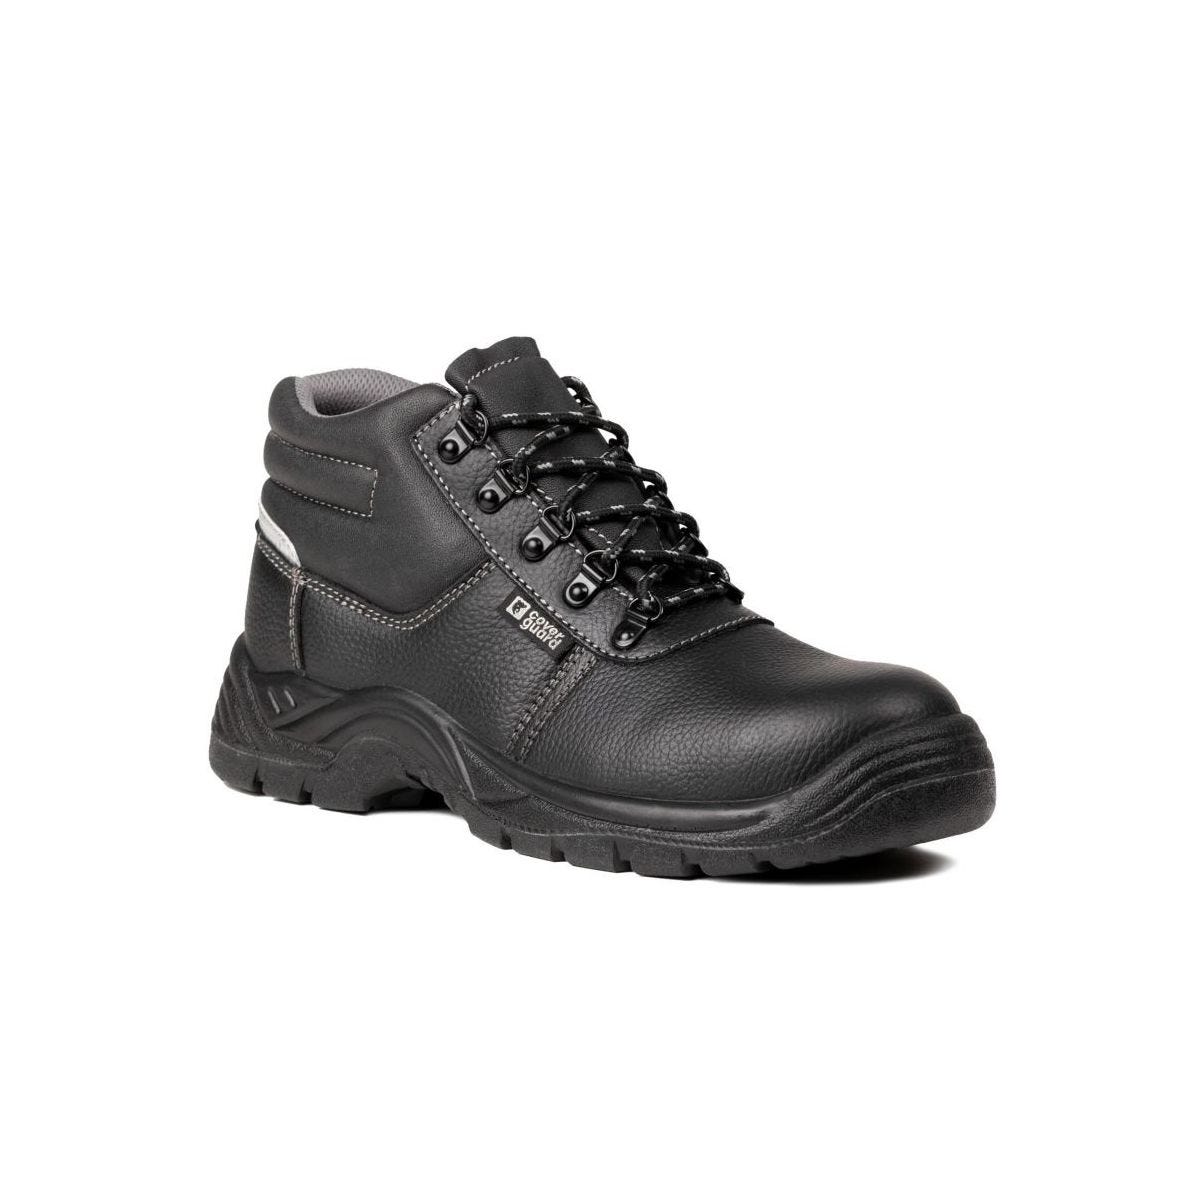 Chaussures de sécurité hautes AGATE II S3 Noir - Coverguard - Taille 42 0